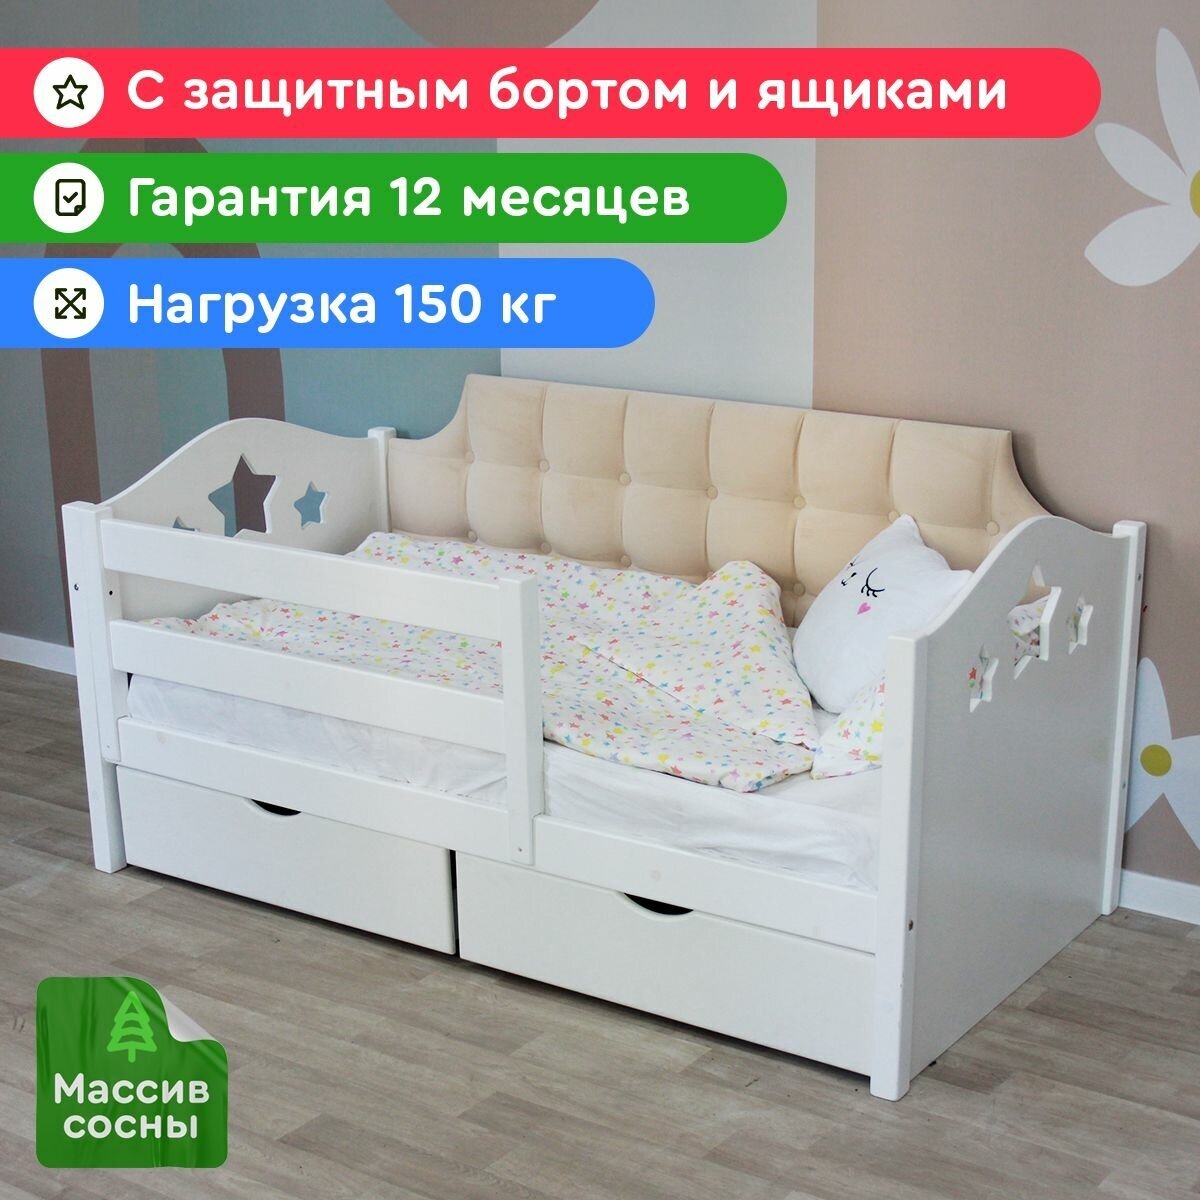 Кровать детская с мягкой спинкой 160х80см стяжка квадрат слоновая кость, с ящиками, для детей